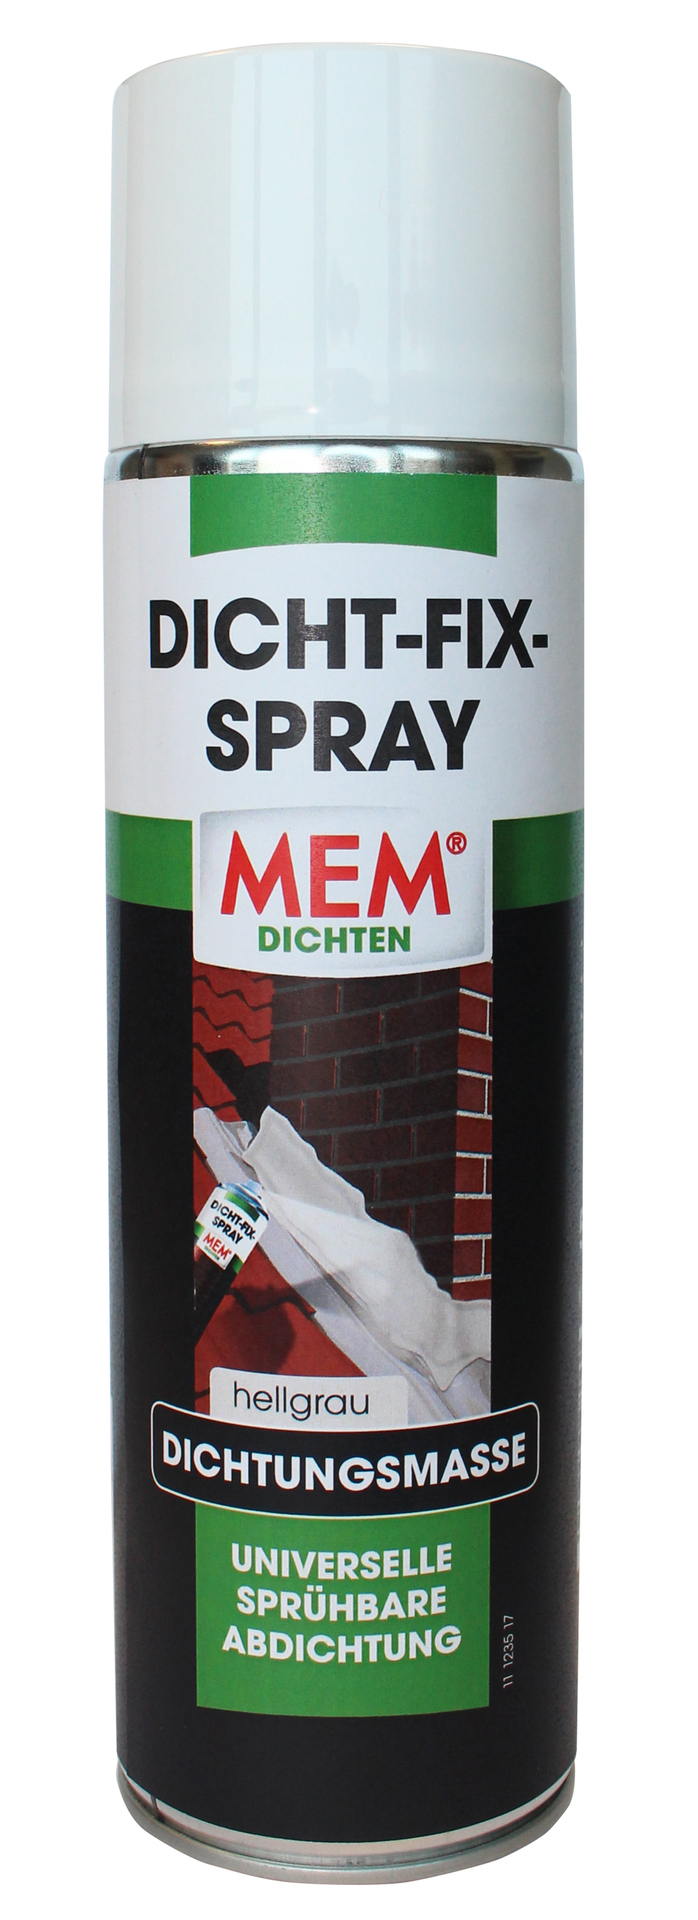 MEM Bauchemie GmbH Dicht Fix Spray 500ml